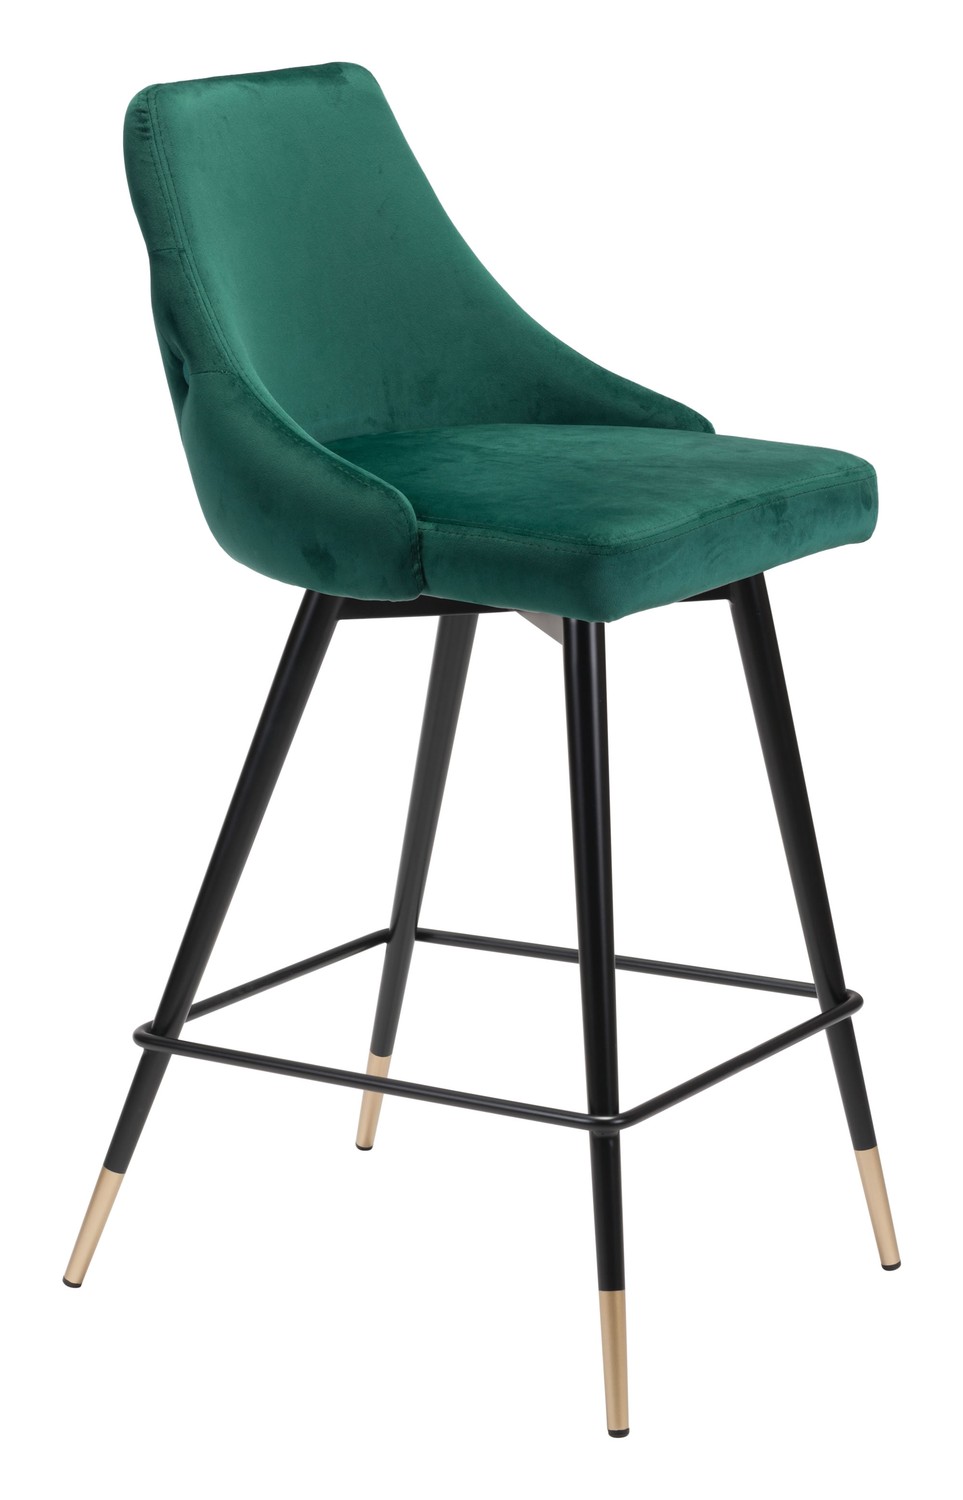 18.5" x 20.9" x 36.4" Green, Velvet, Stainless Steel, Counter Chair